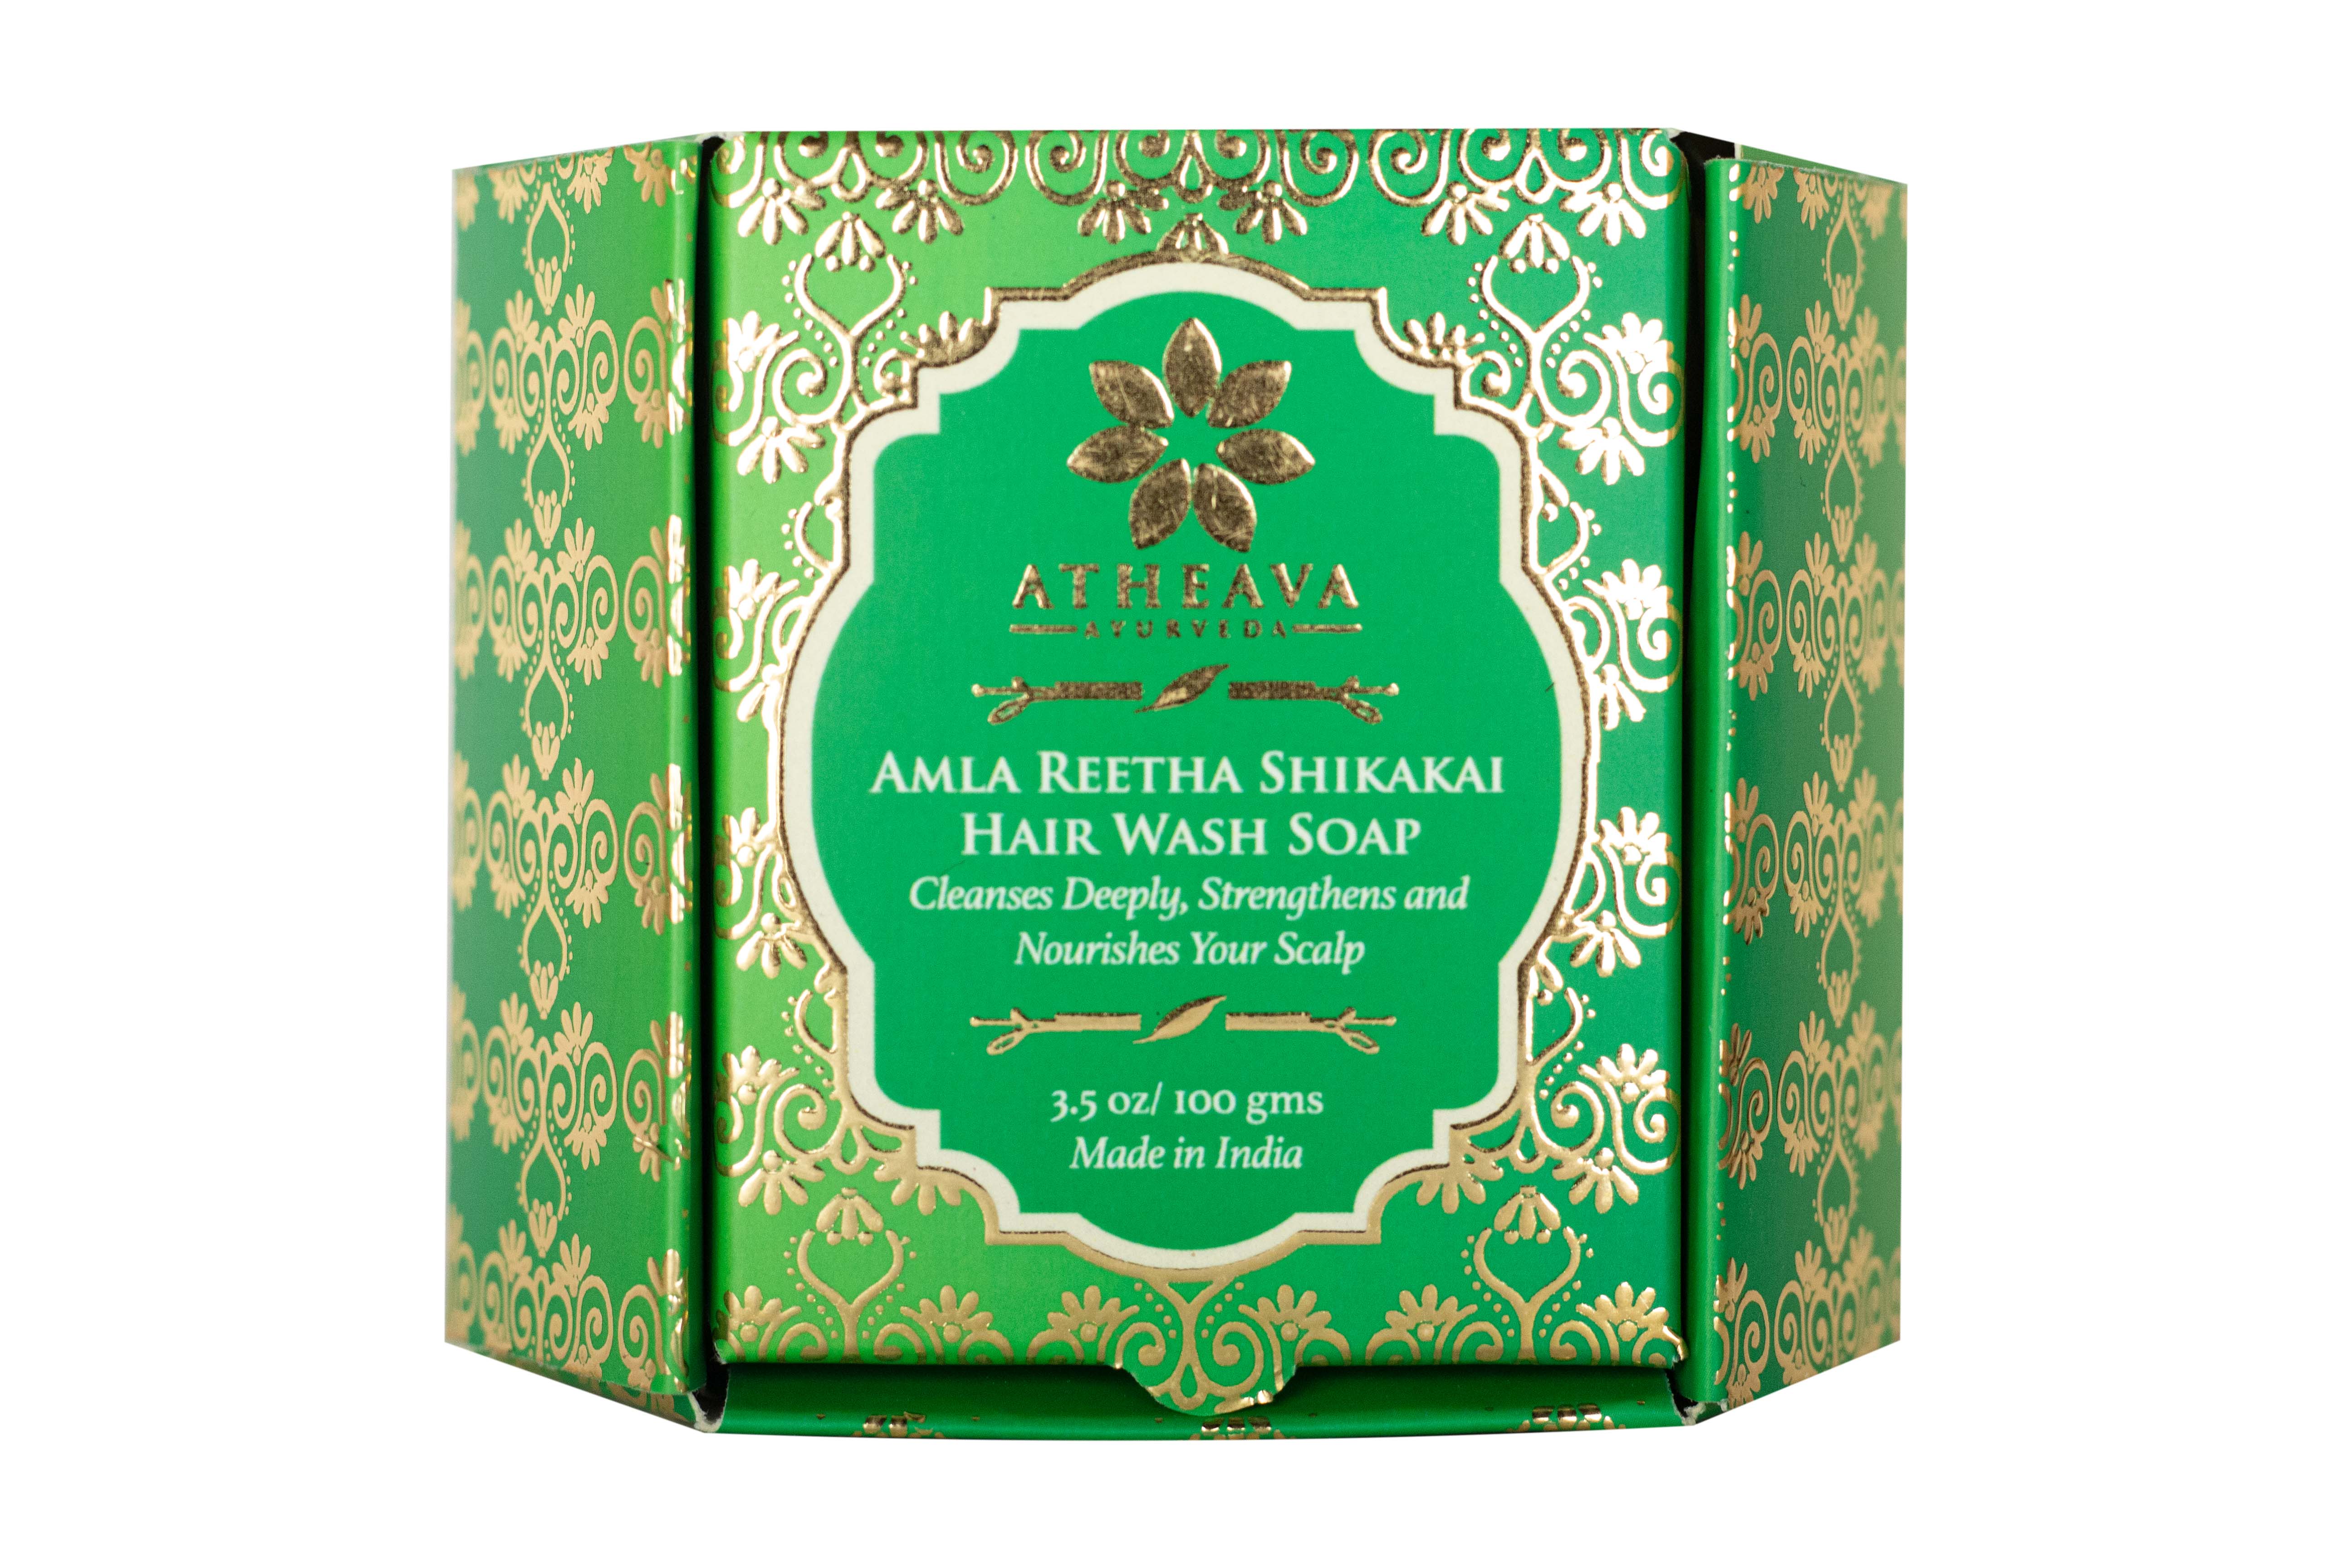 Amla Reetha Shikakai Hair Wash – Atheava Ayurveda